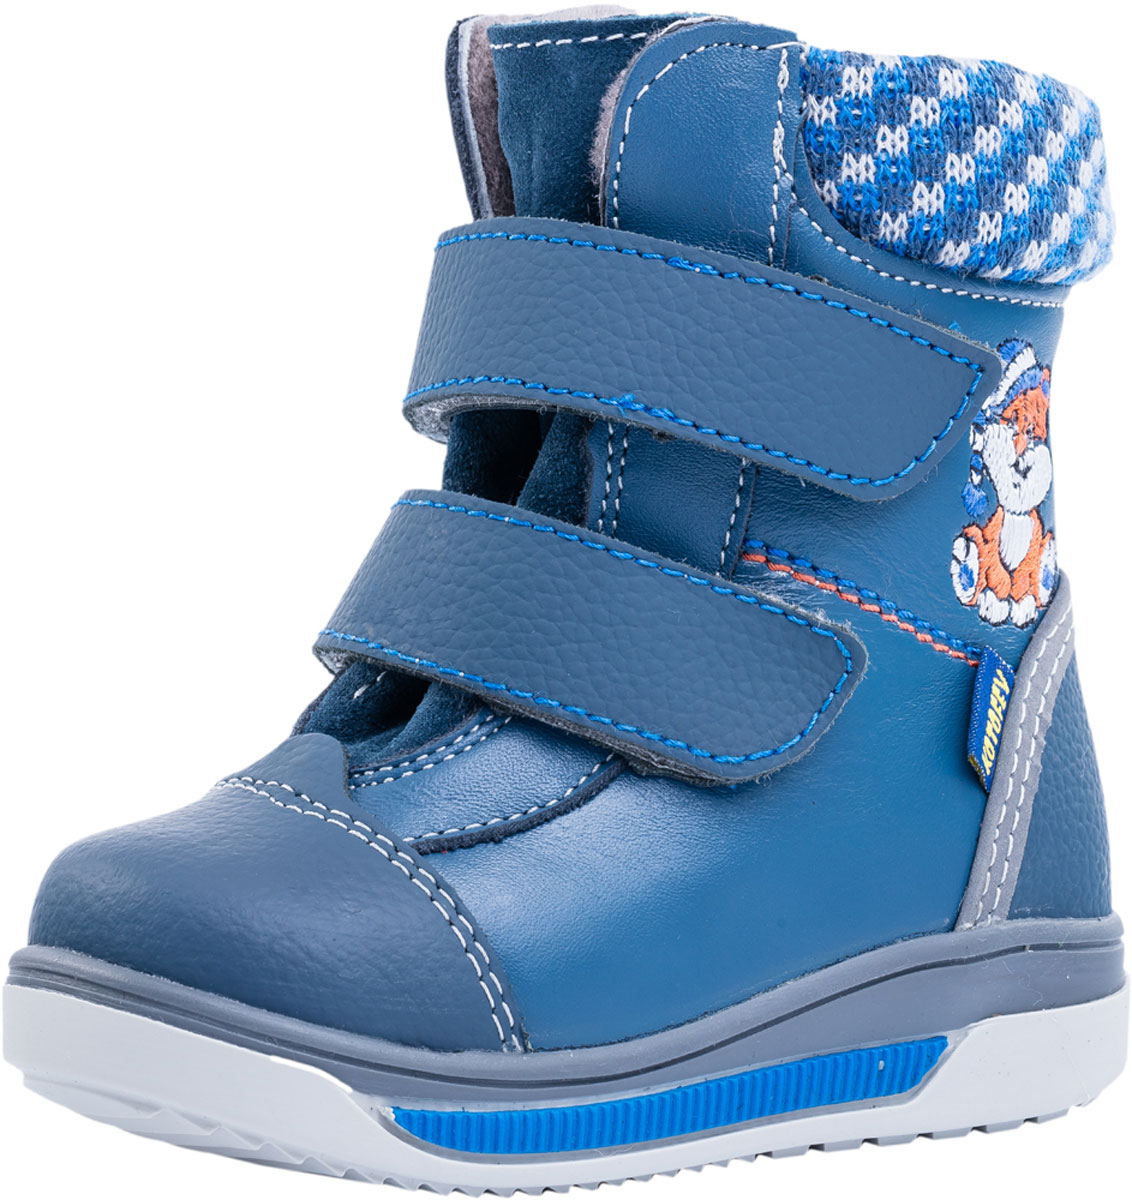 Ботинки для мальчика Котофей, цвет: синий. 152187-51. Размер 21